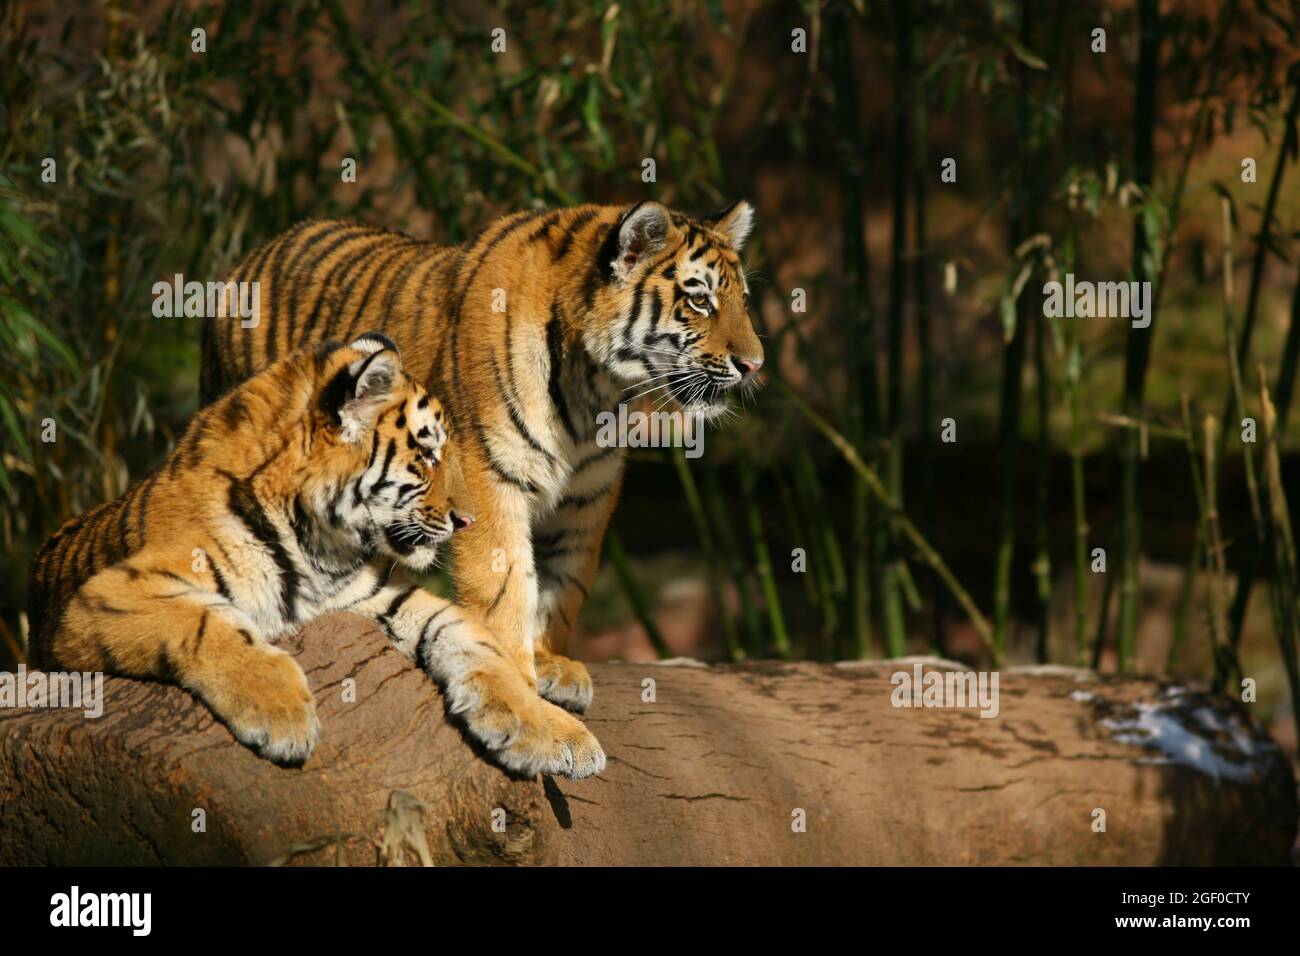 Der Tiger ist die größte Raubkatze der Erde. Photos vom Tiergarten oder Zoo  in Nürnberg, Franken, Bayern, Deutschland Stock Photo